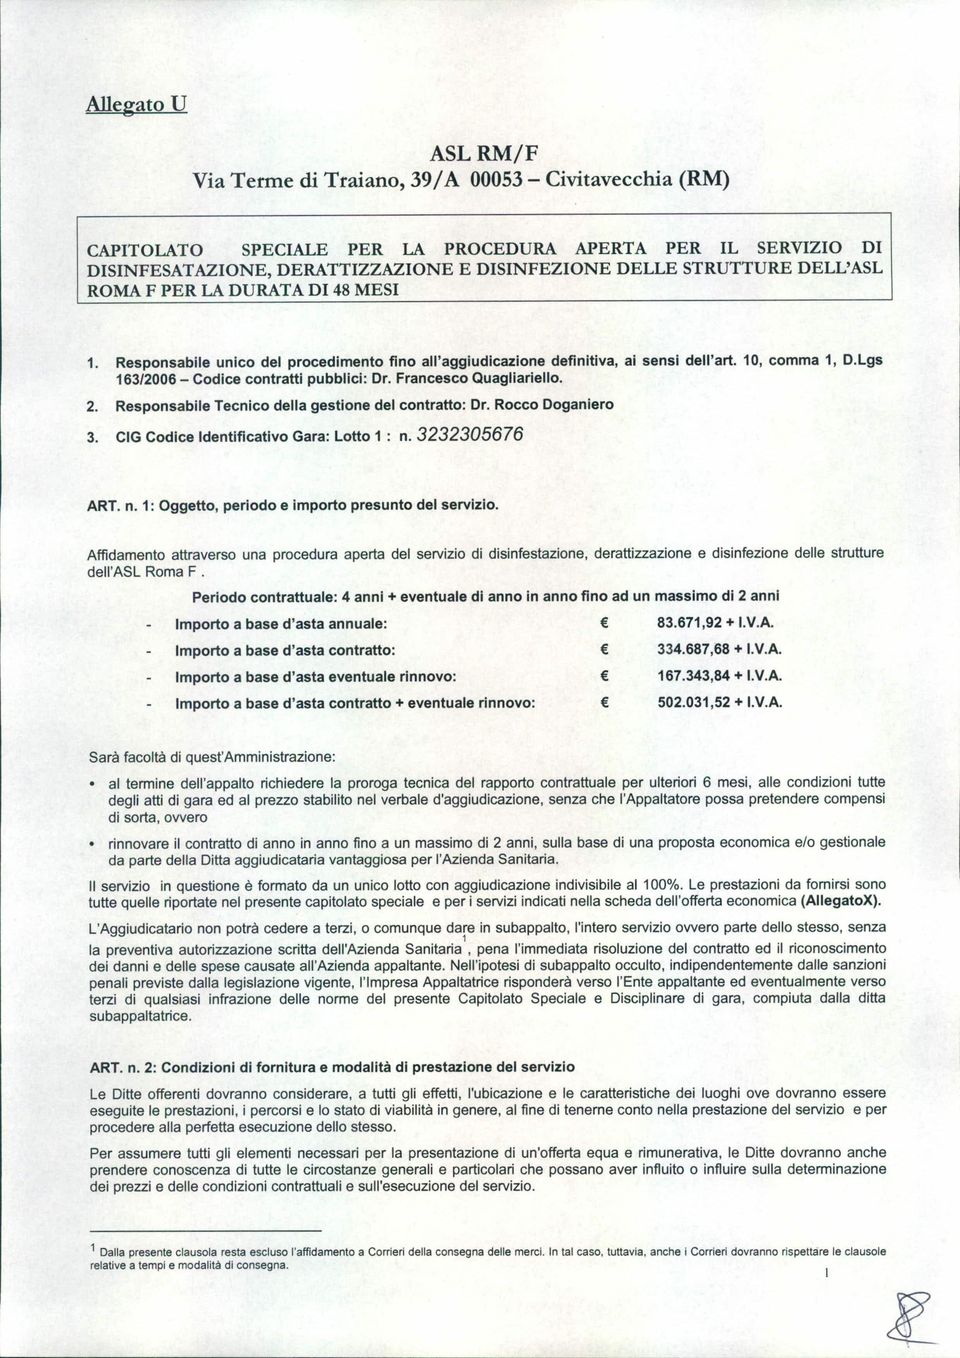 Lgs 163/2006 - Codice contratti pubblici: Dr. Francesco Quagliariello. 2. Responsabile Tecnico della gestione del contratto: Dr. Rocco Doganiero 3. CIG Codice Identificativo Gara: Lotto 1 : n.